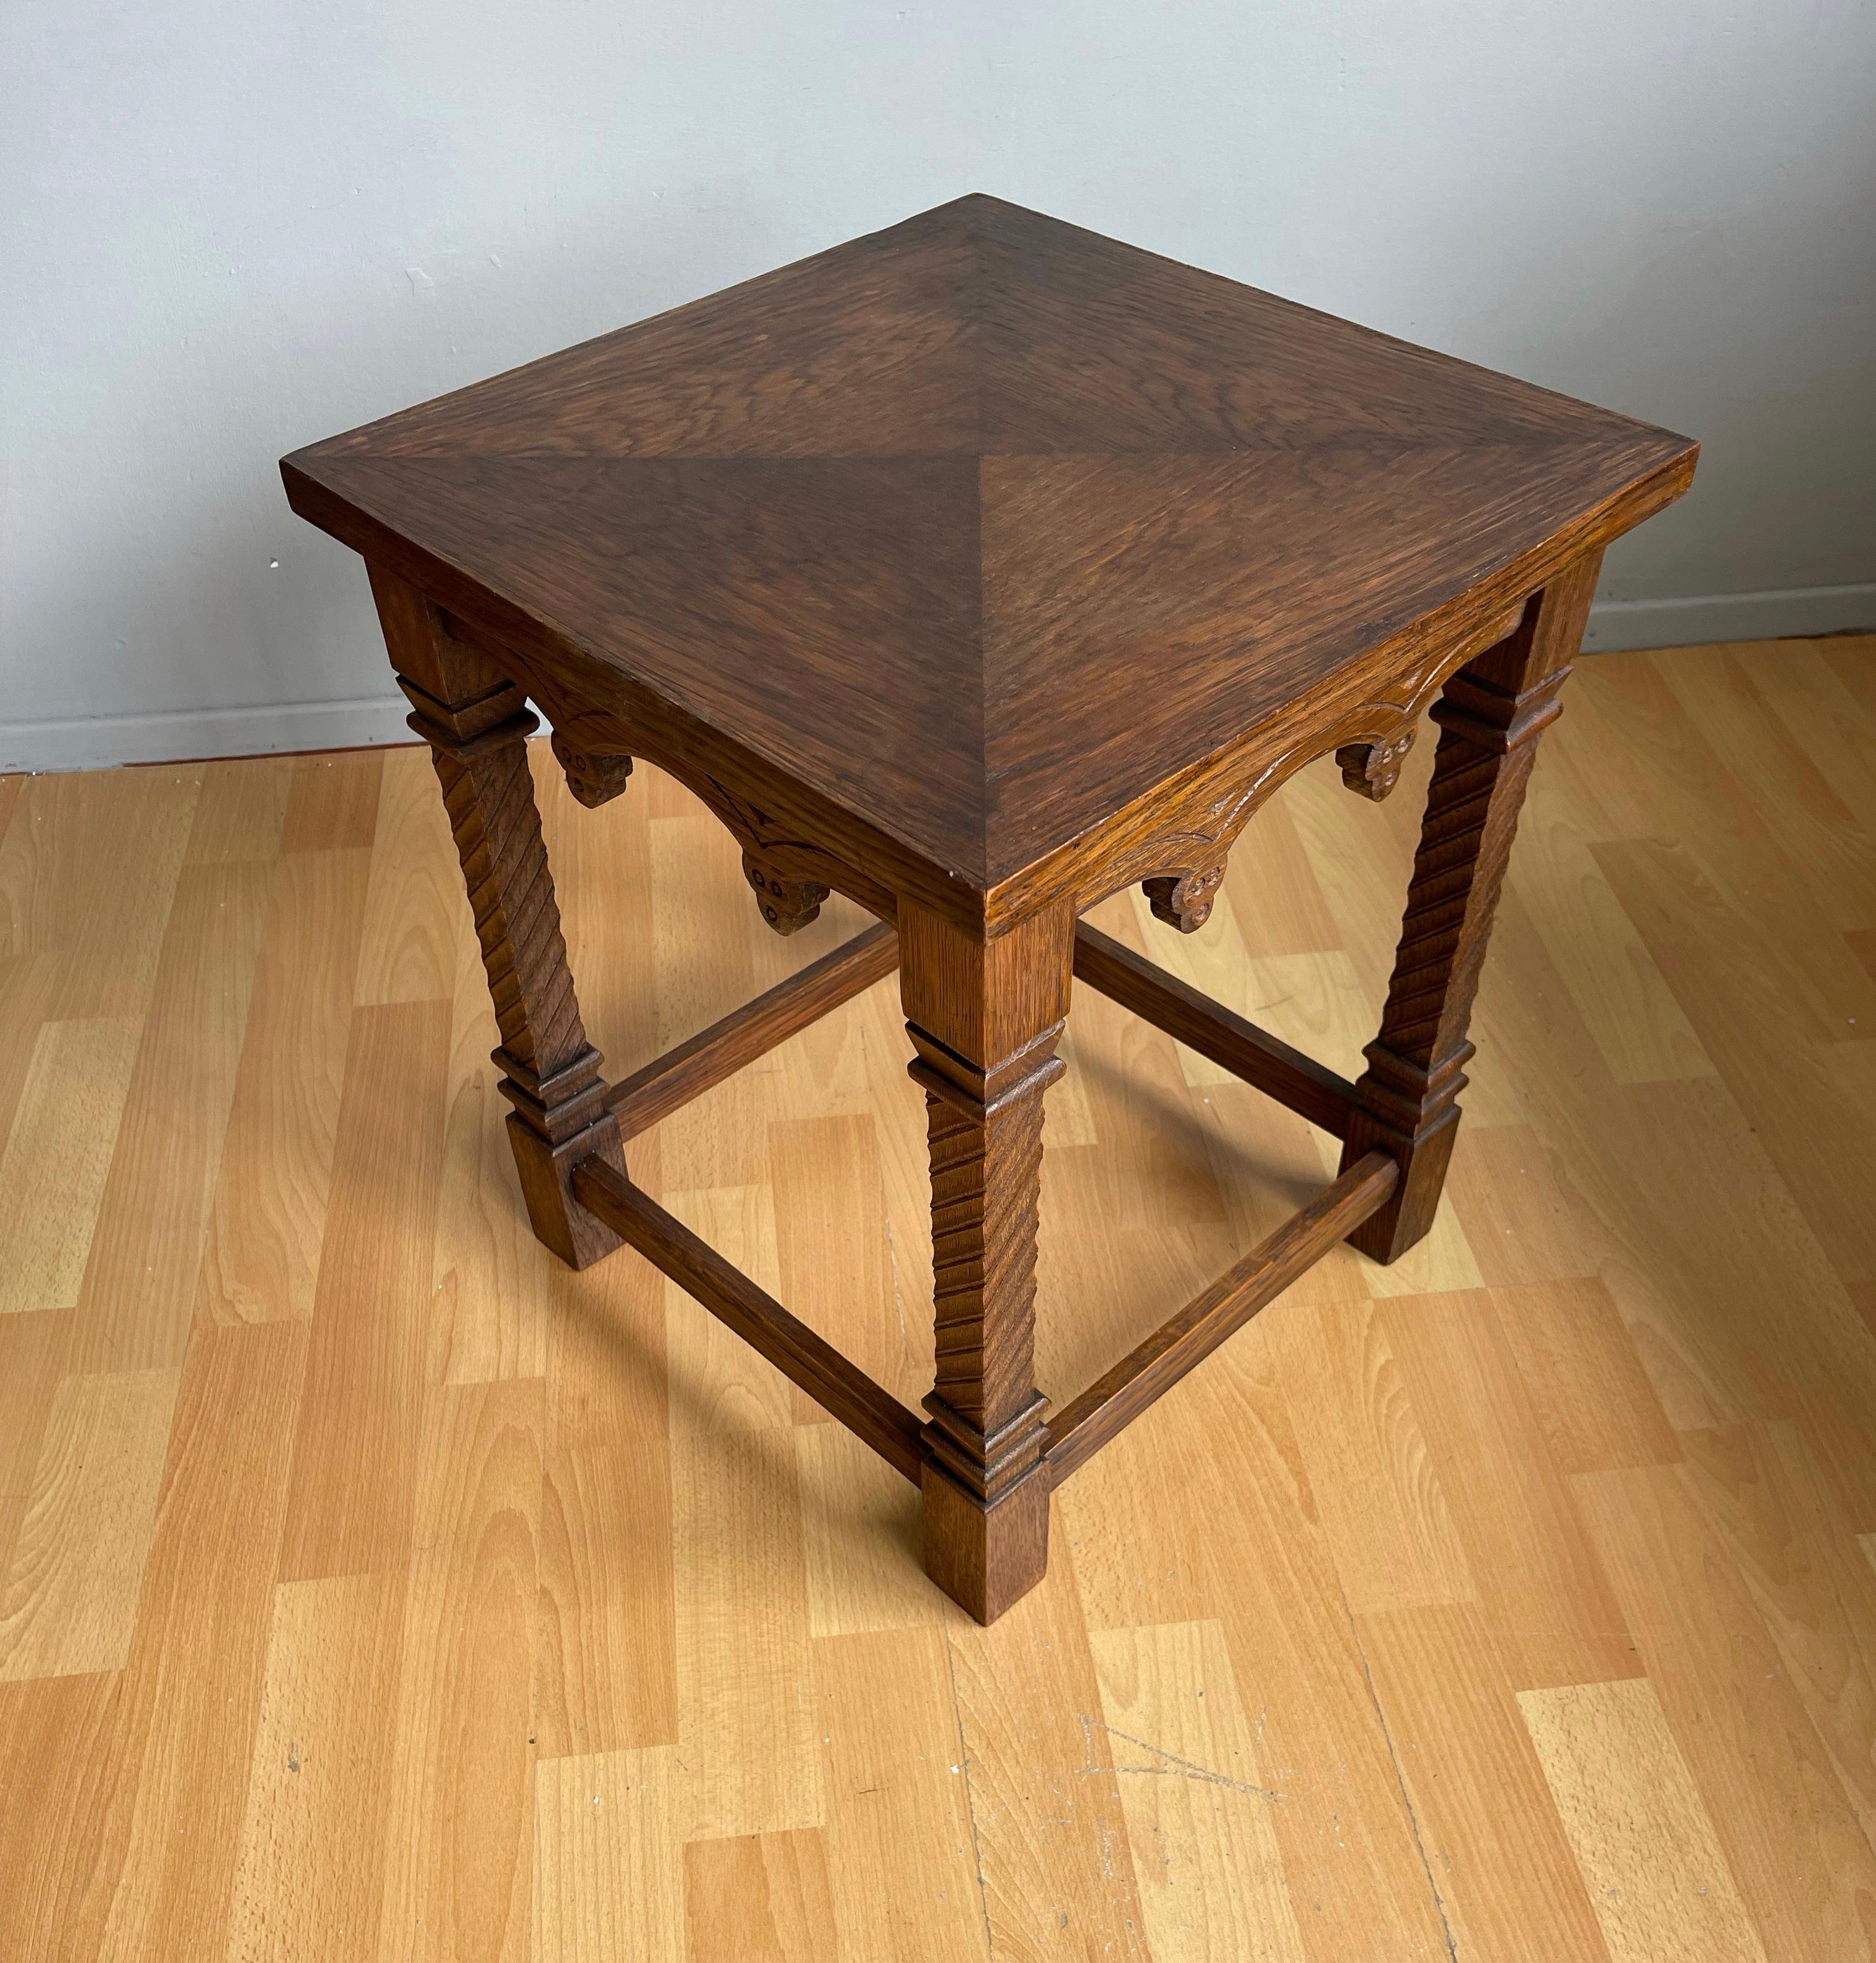 Praktische Größe und gebrauchsfertig, frühen zwanzigsten Jahrhunderts gotischen Tisch.

Wenn Sie auf der Suche nach einem Tisch von praktischer Größe und in hervorragendem Zustand sind, um Ihren Wohnraum zu verschönern, dann könnte dieses